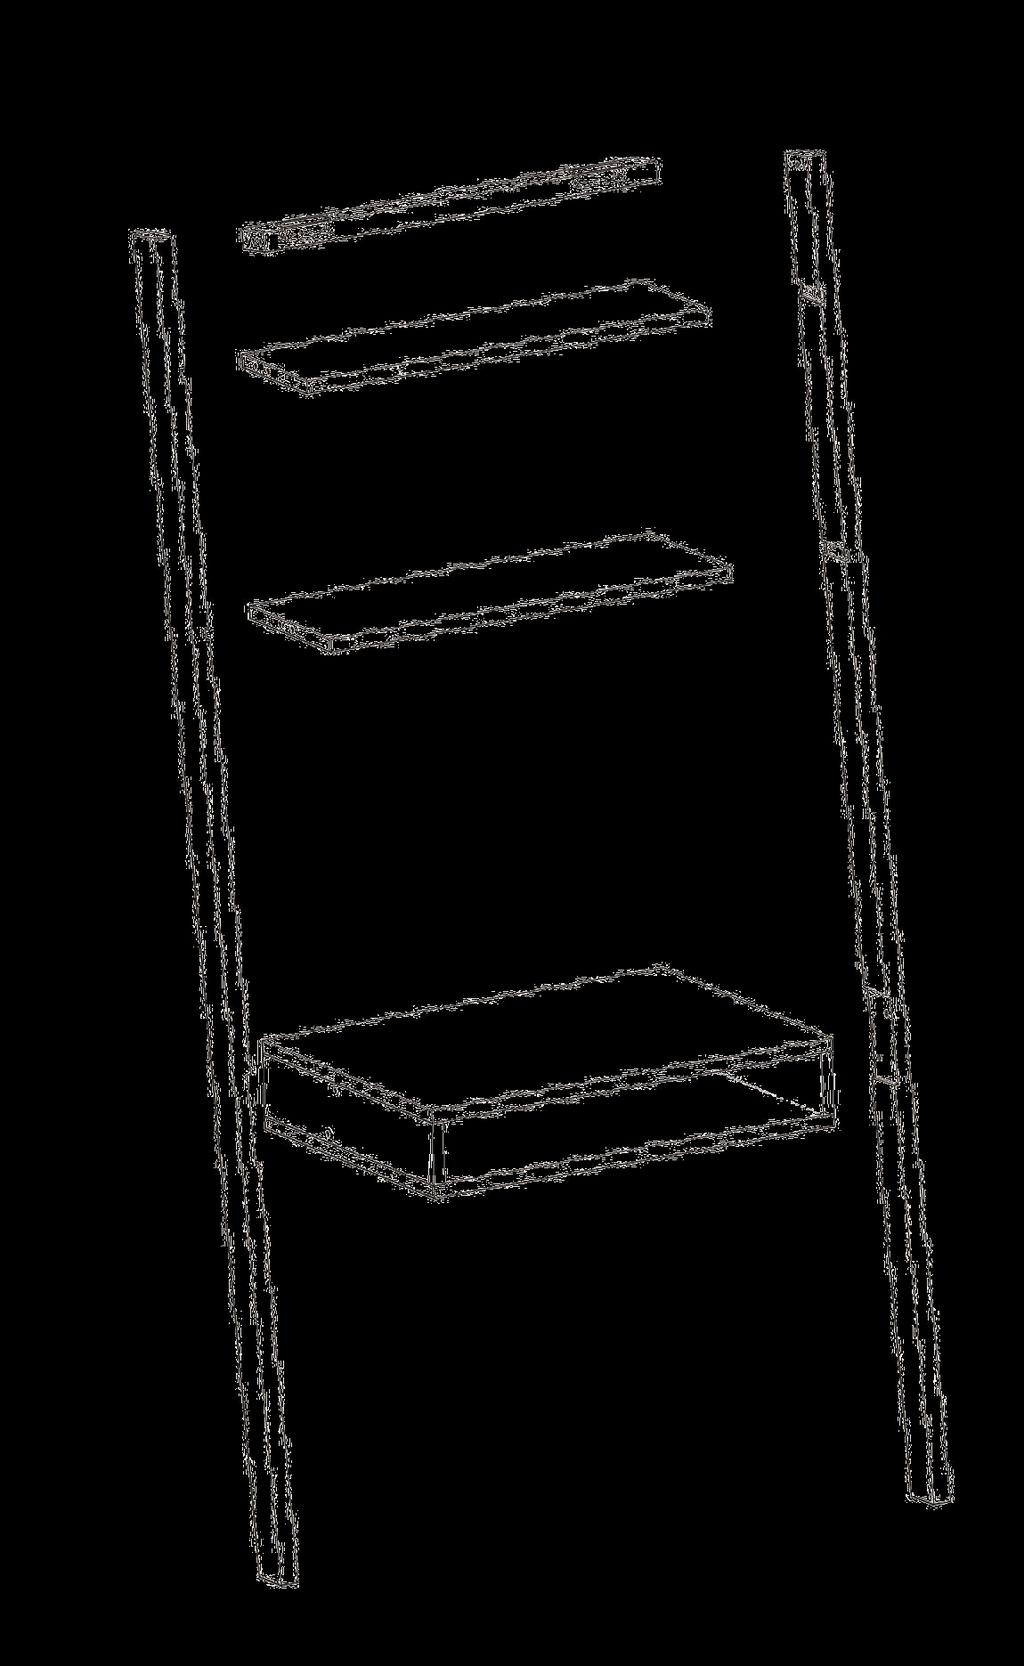 Top Bar (A) Barre supérieure (A) Barra superior (A) Top side Top Shelf (B) Étagère supérieure (B) Estante superior (B) Middle Shelf (C) Étagère du milieu (C) Estante medio (C)